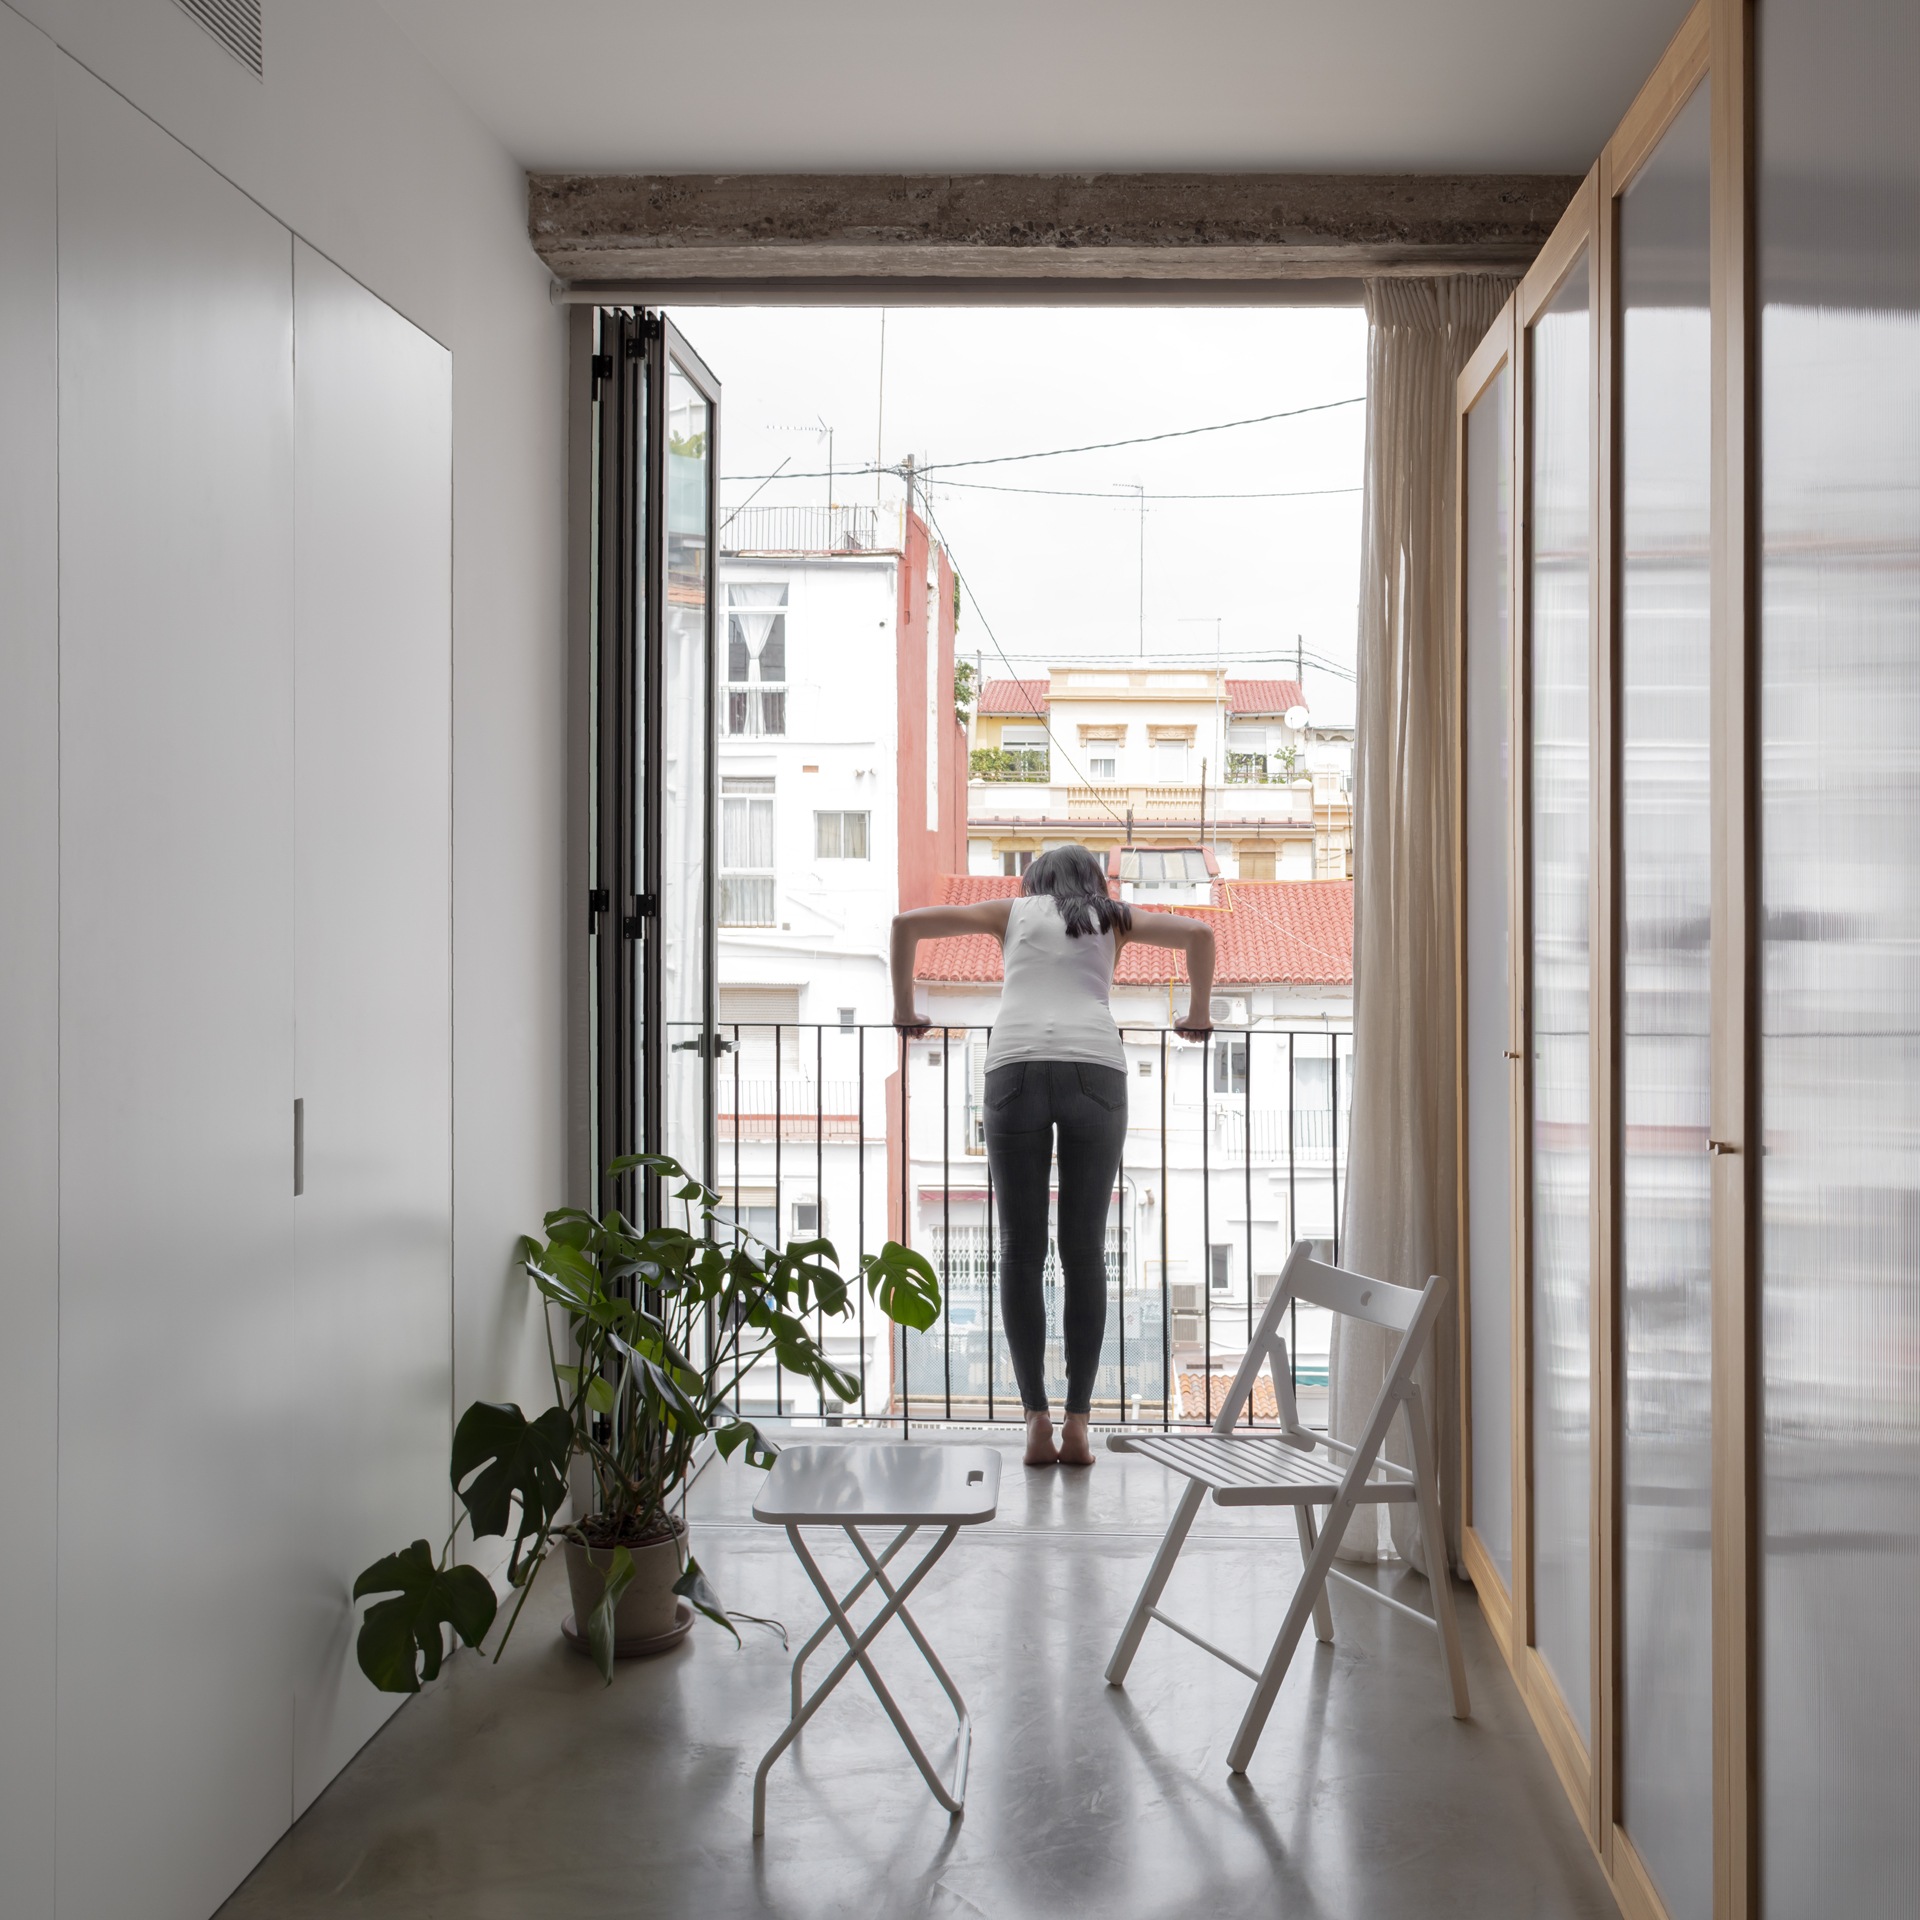 Literato Azorín Refurbishment; architects: Urlo Estudio. Photo by ©Milena Villalba 2019